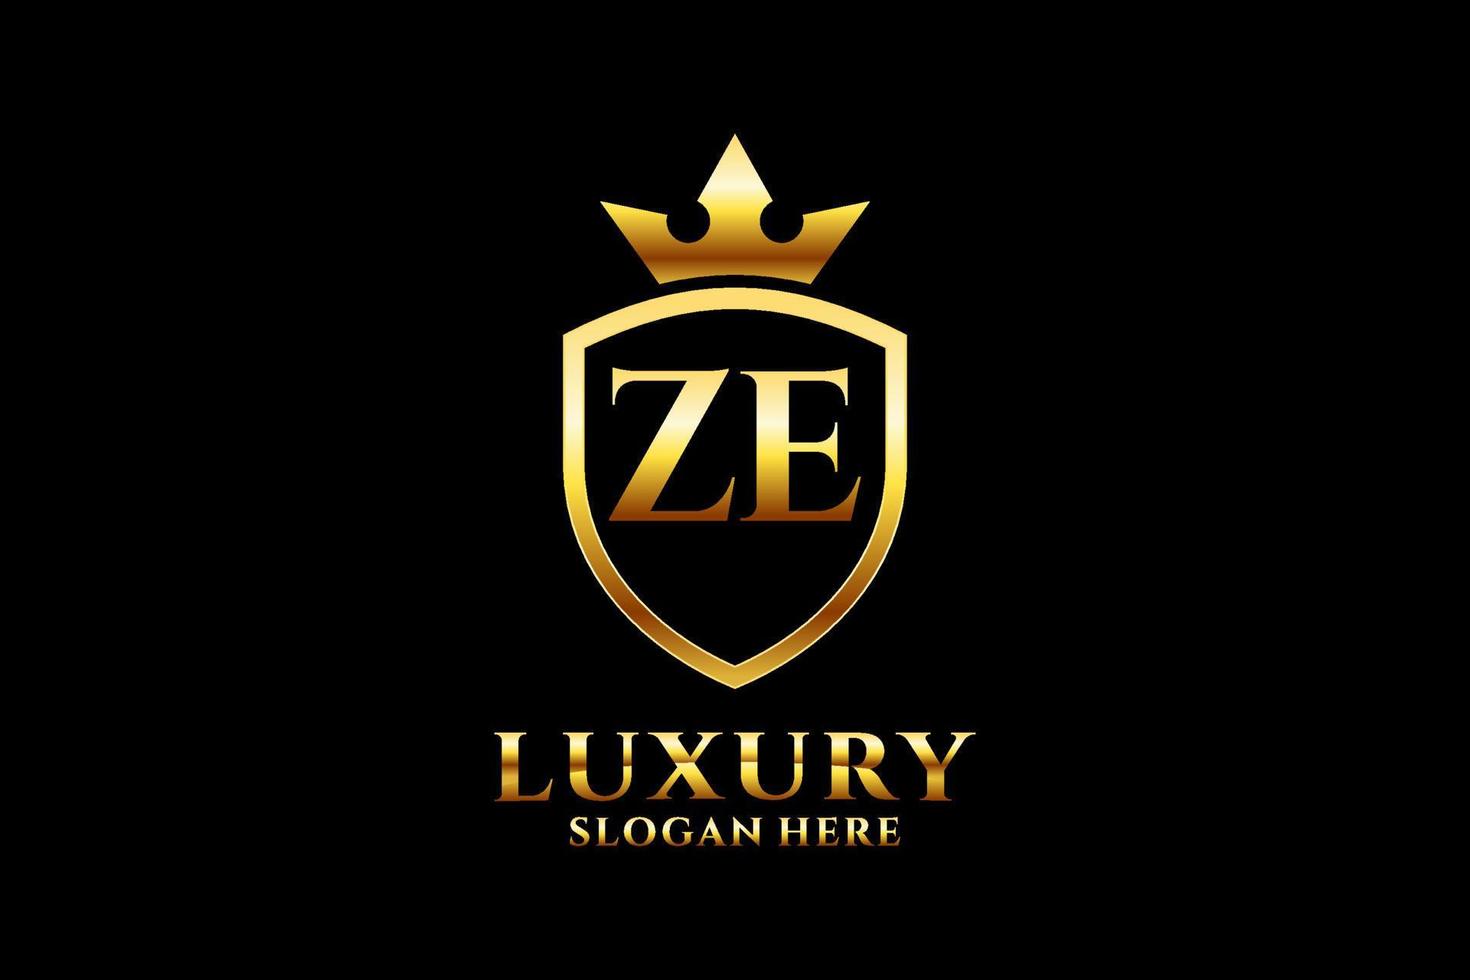 logo monogramme de luxe élégant initial ze ou modèle de badge avec volutes et couronne royale - parfait pour les projets de marque de luxe vecteur